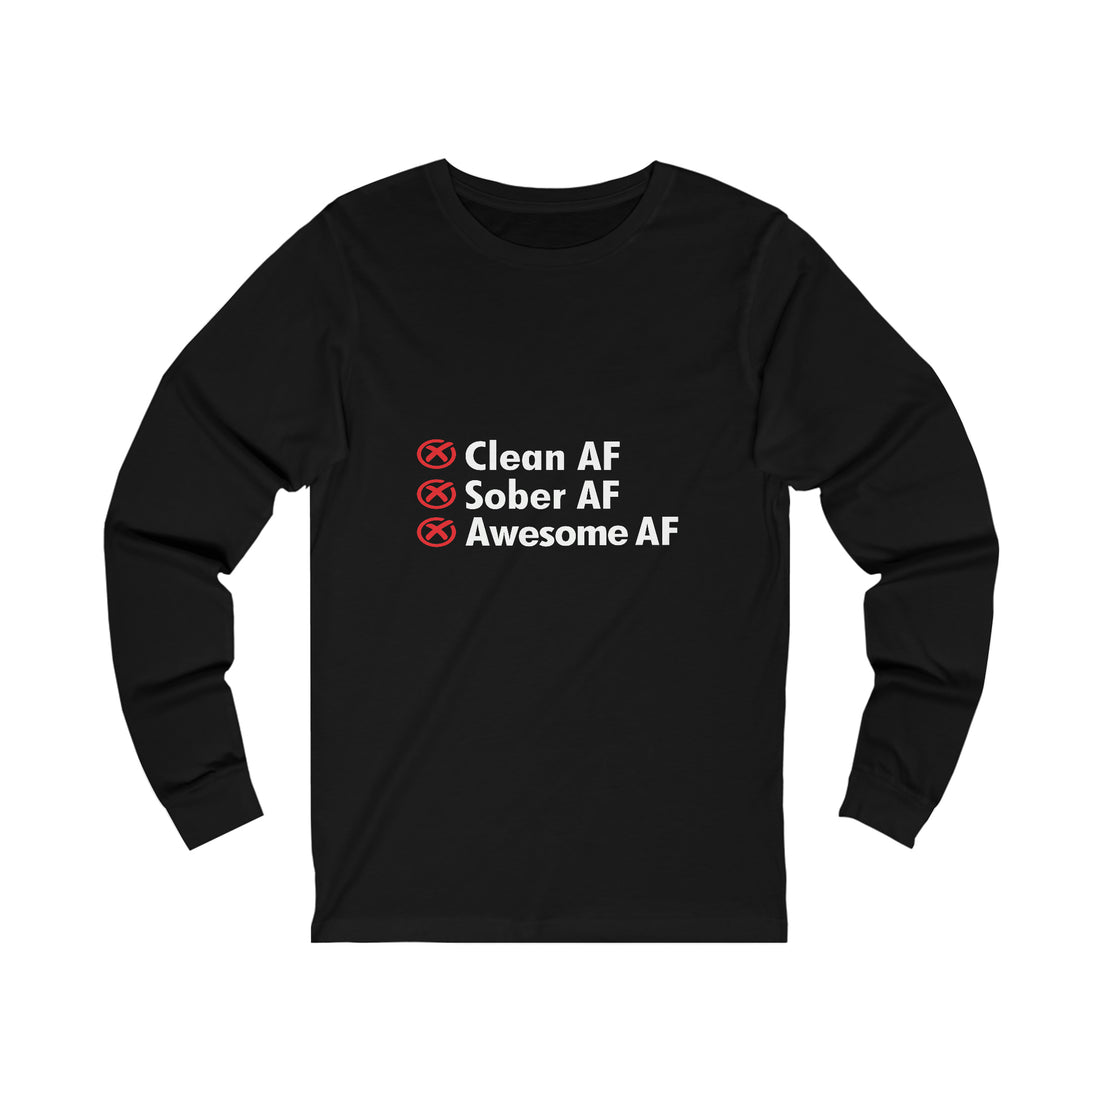 Clean AF Sober AF Awesome AF - Unisex Jersey Long Sleeve Tee